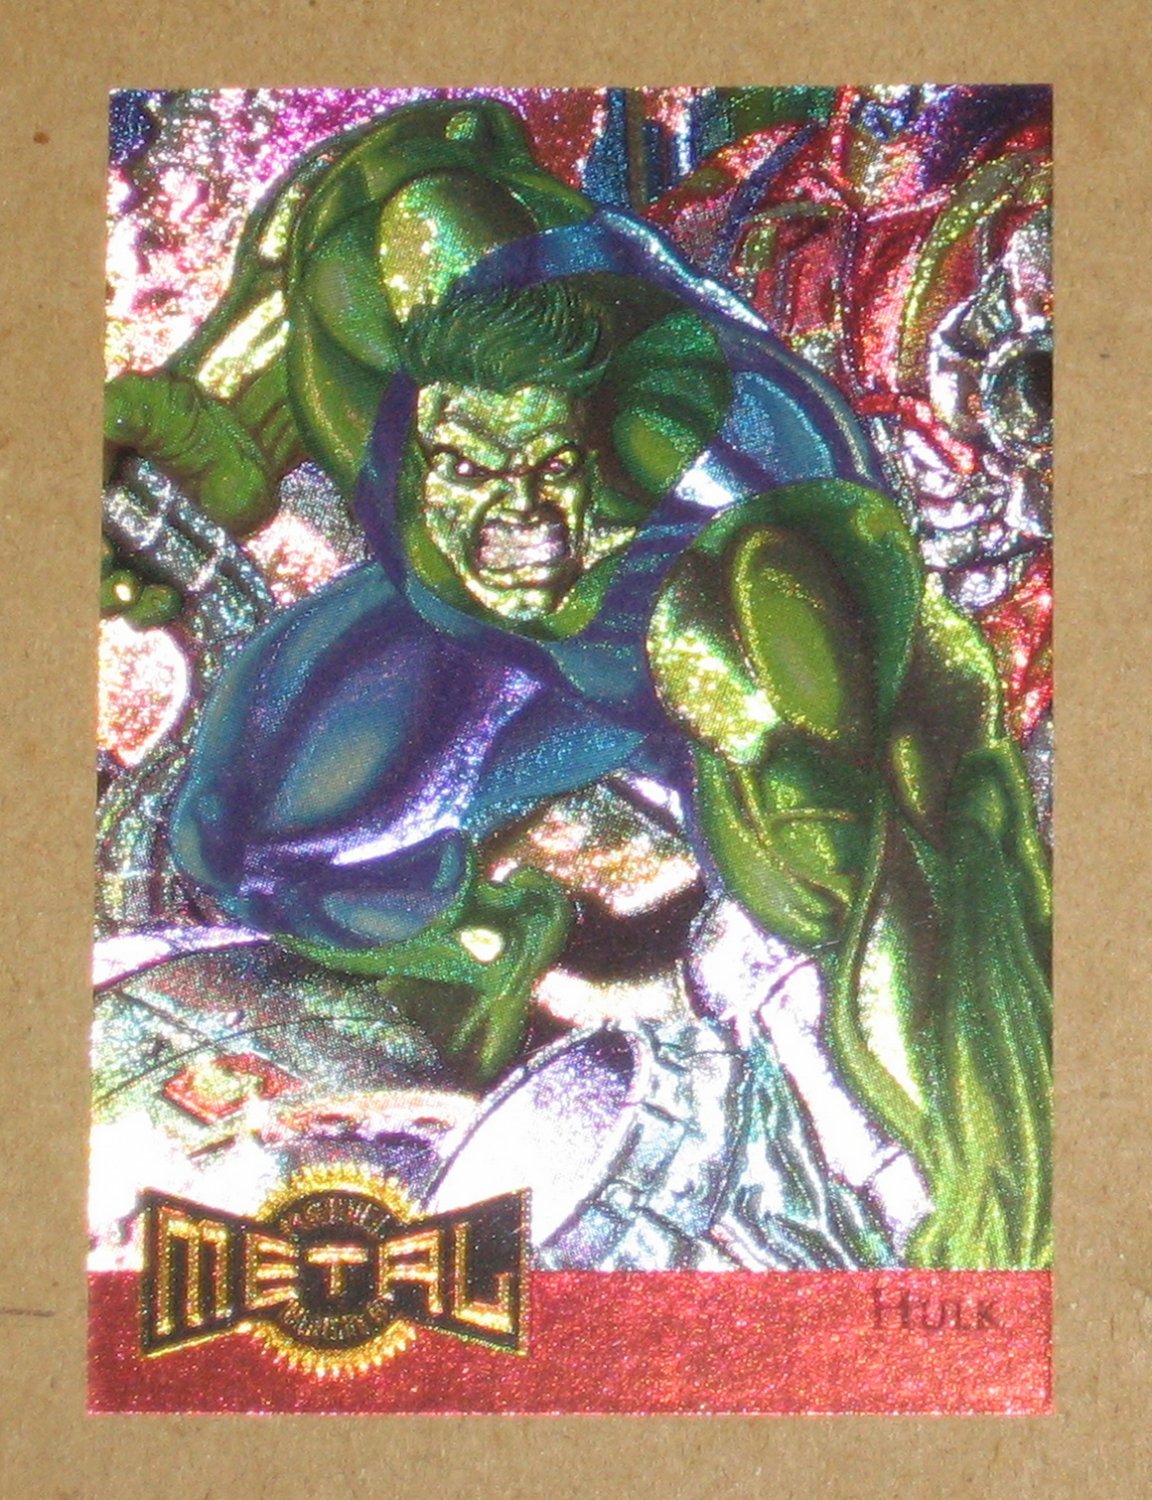 Marvel Metal (Fleer 1995) Metal Blaster Card 5 Hulk EX